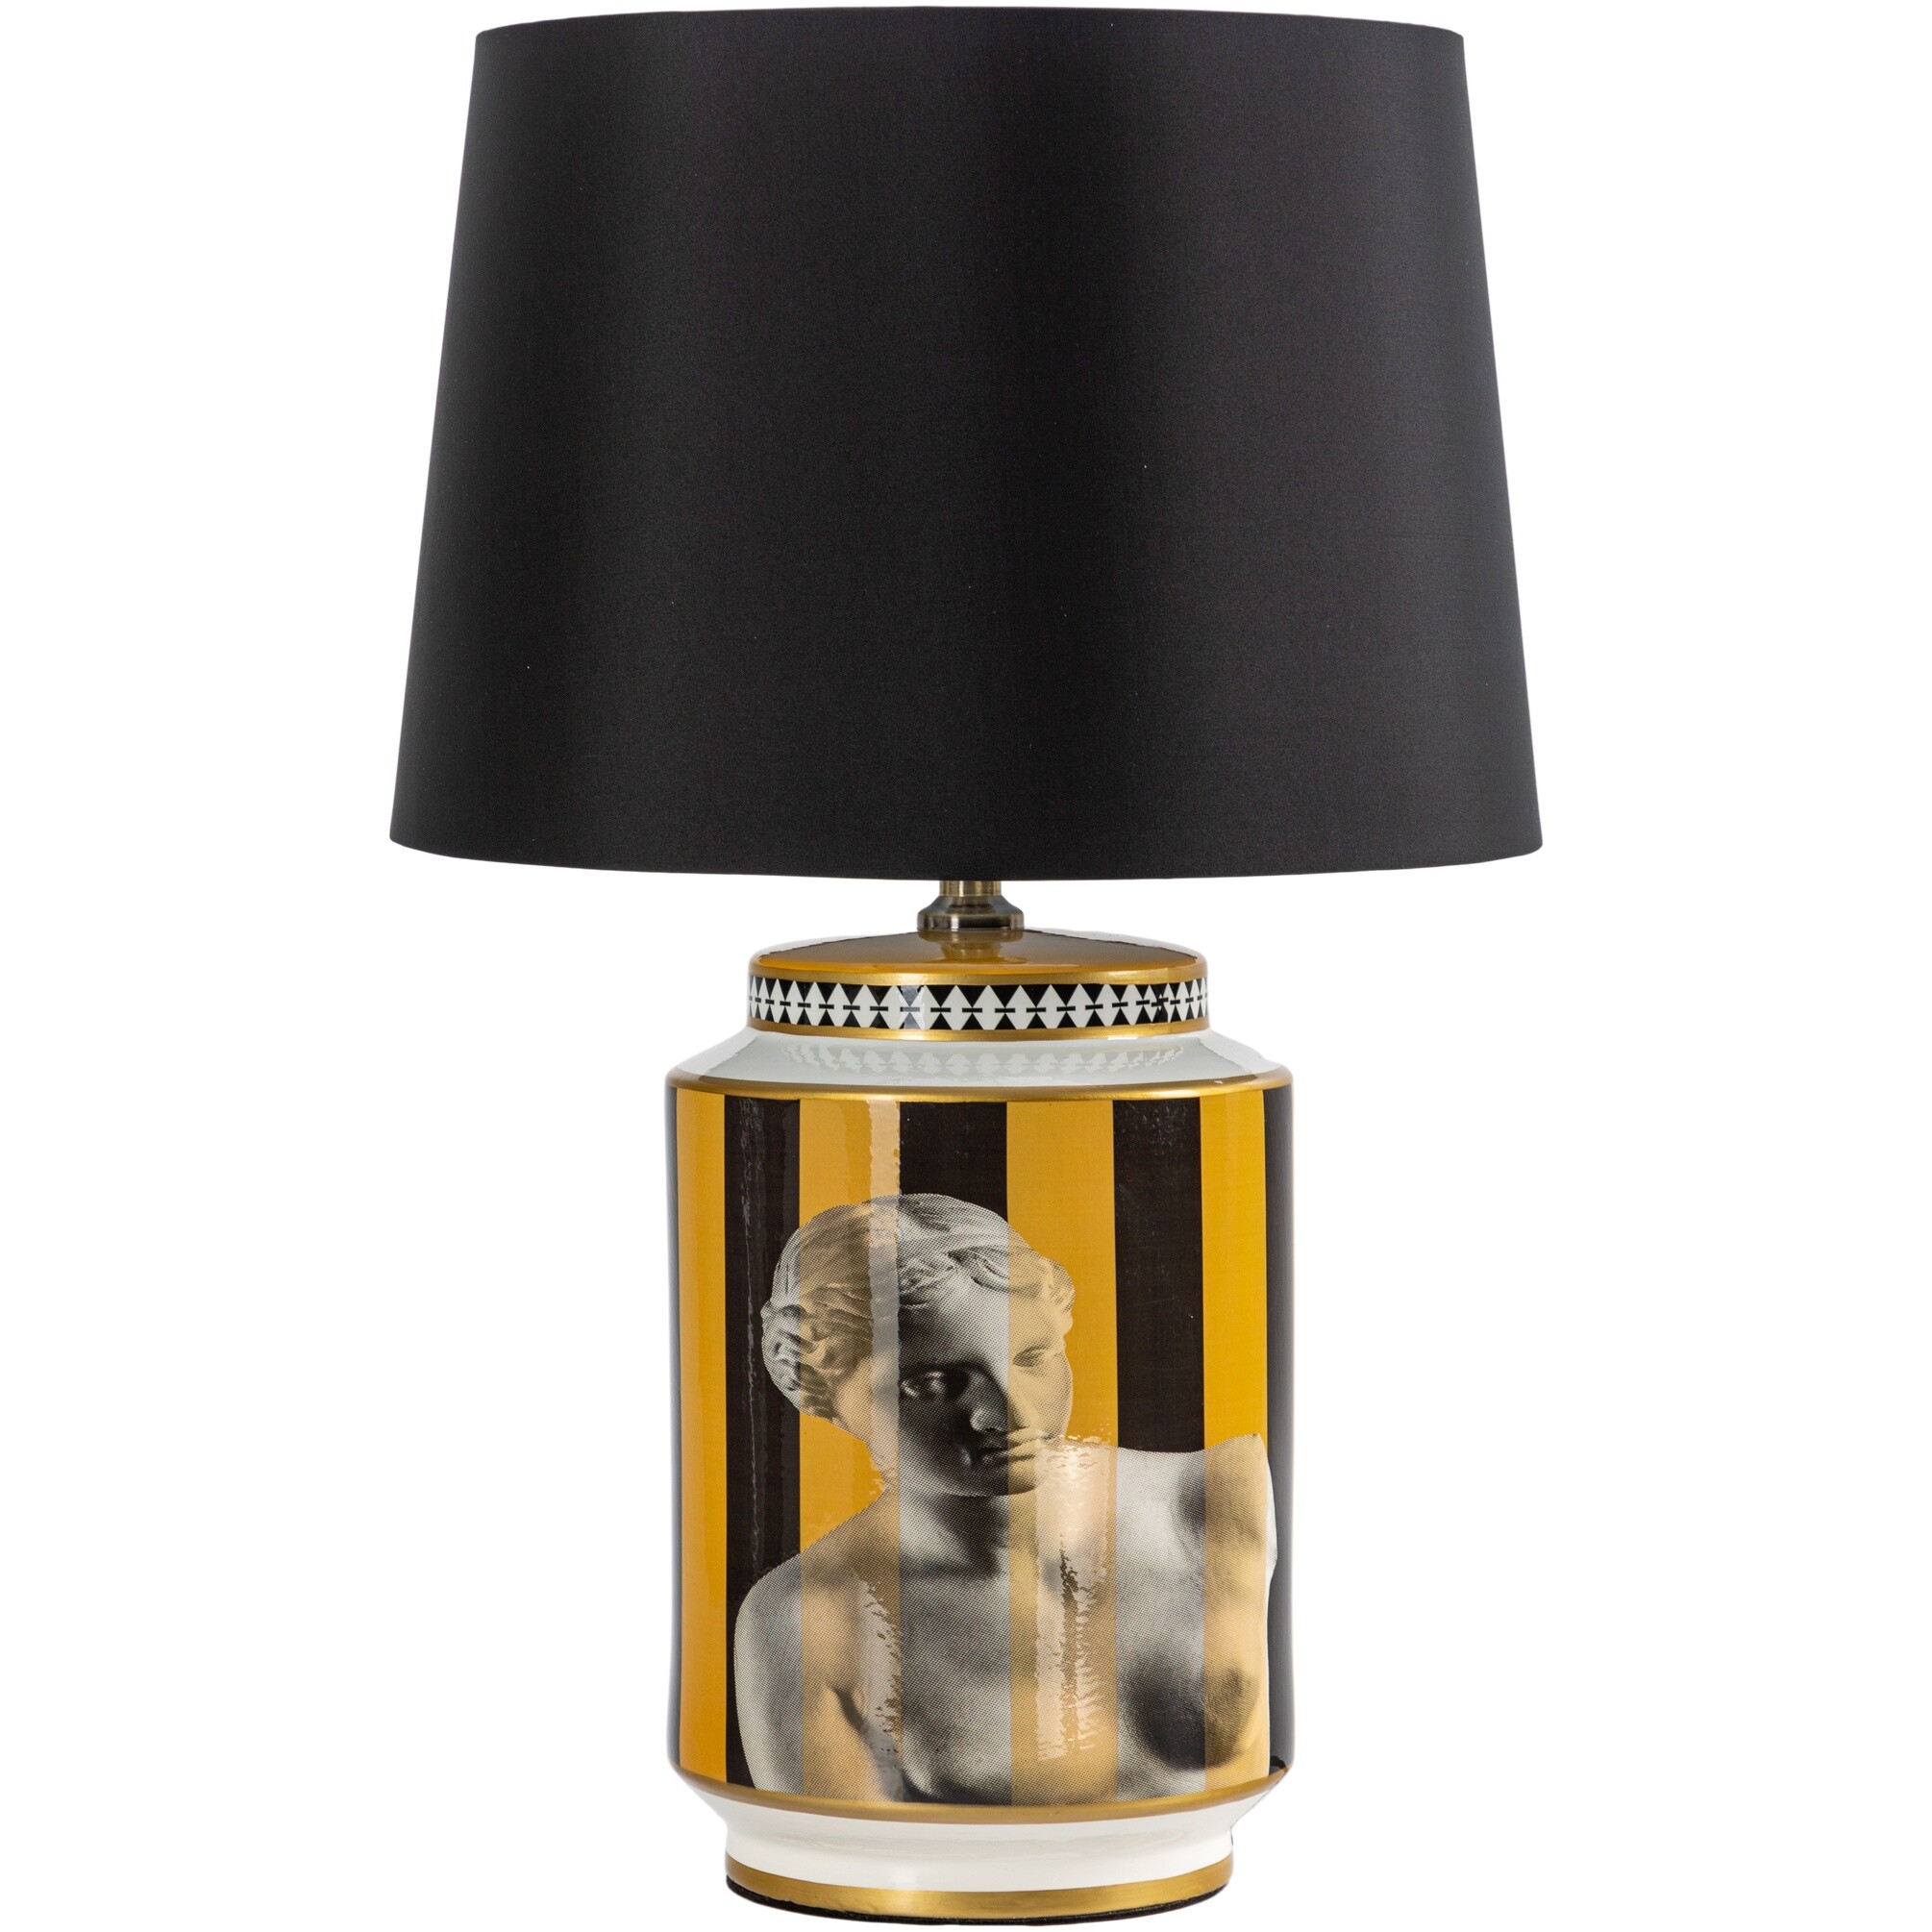 Лампа настольная керамическая с абажуром 68 см черная, желтая 58-023